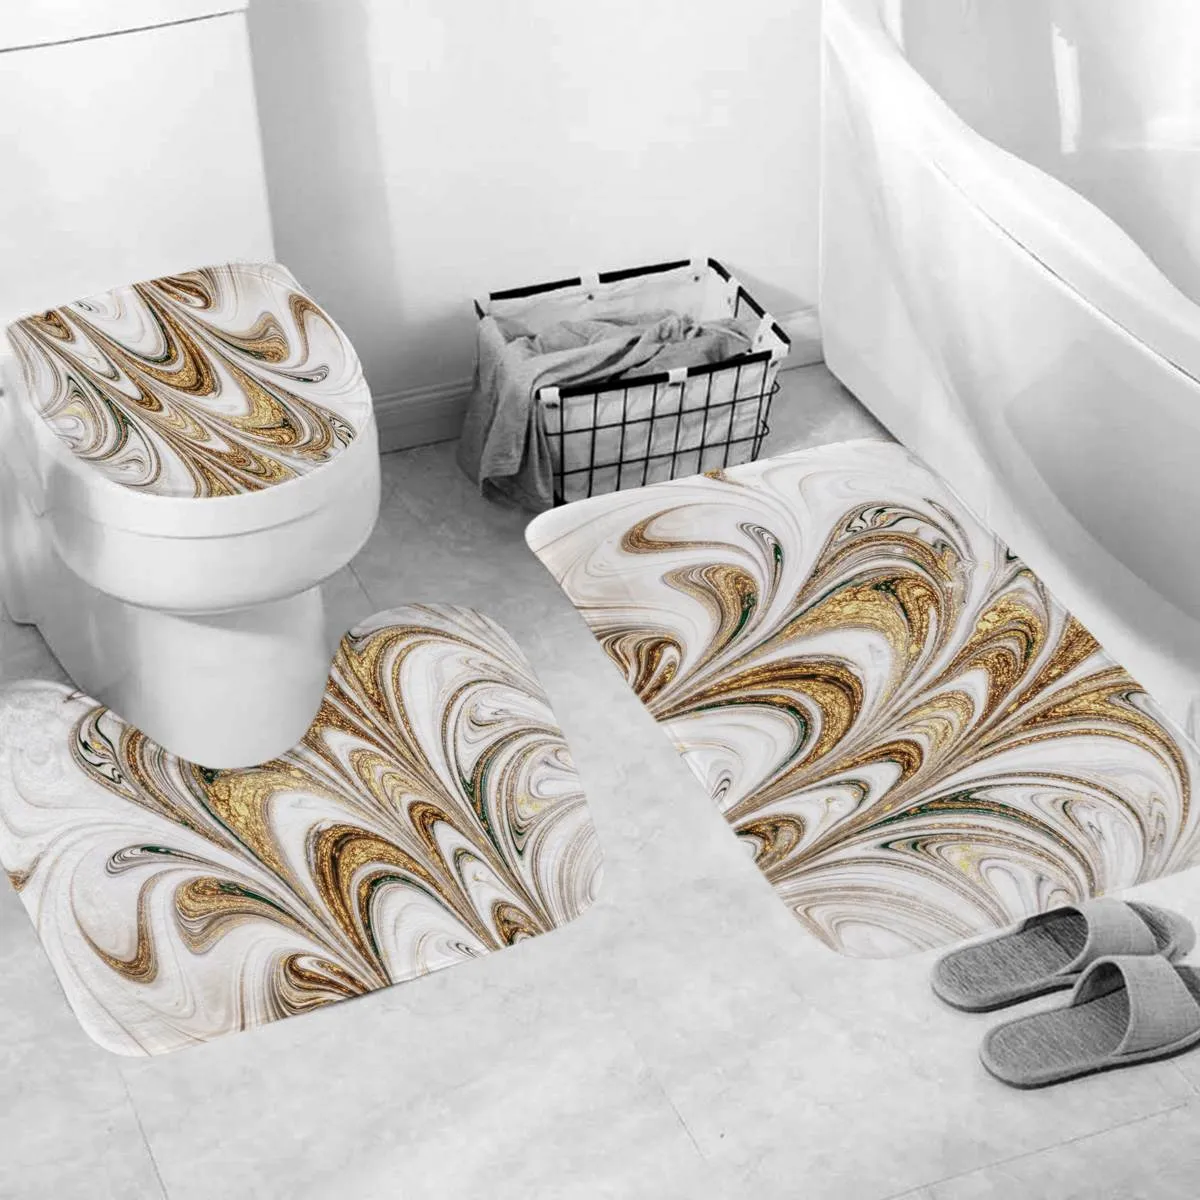 Conjunto de banheiros Curta -tats de cortina de cortina de chuveiro de banheiro tapetes de banheiros capa de assento na tampa da tampa do banheiro decoração de banheiro 180cmx180cm lj2018618594